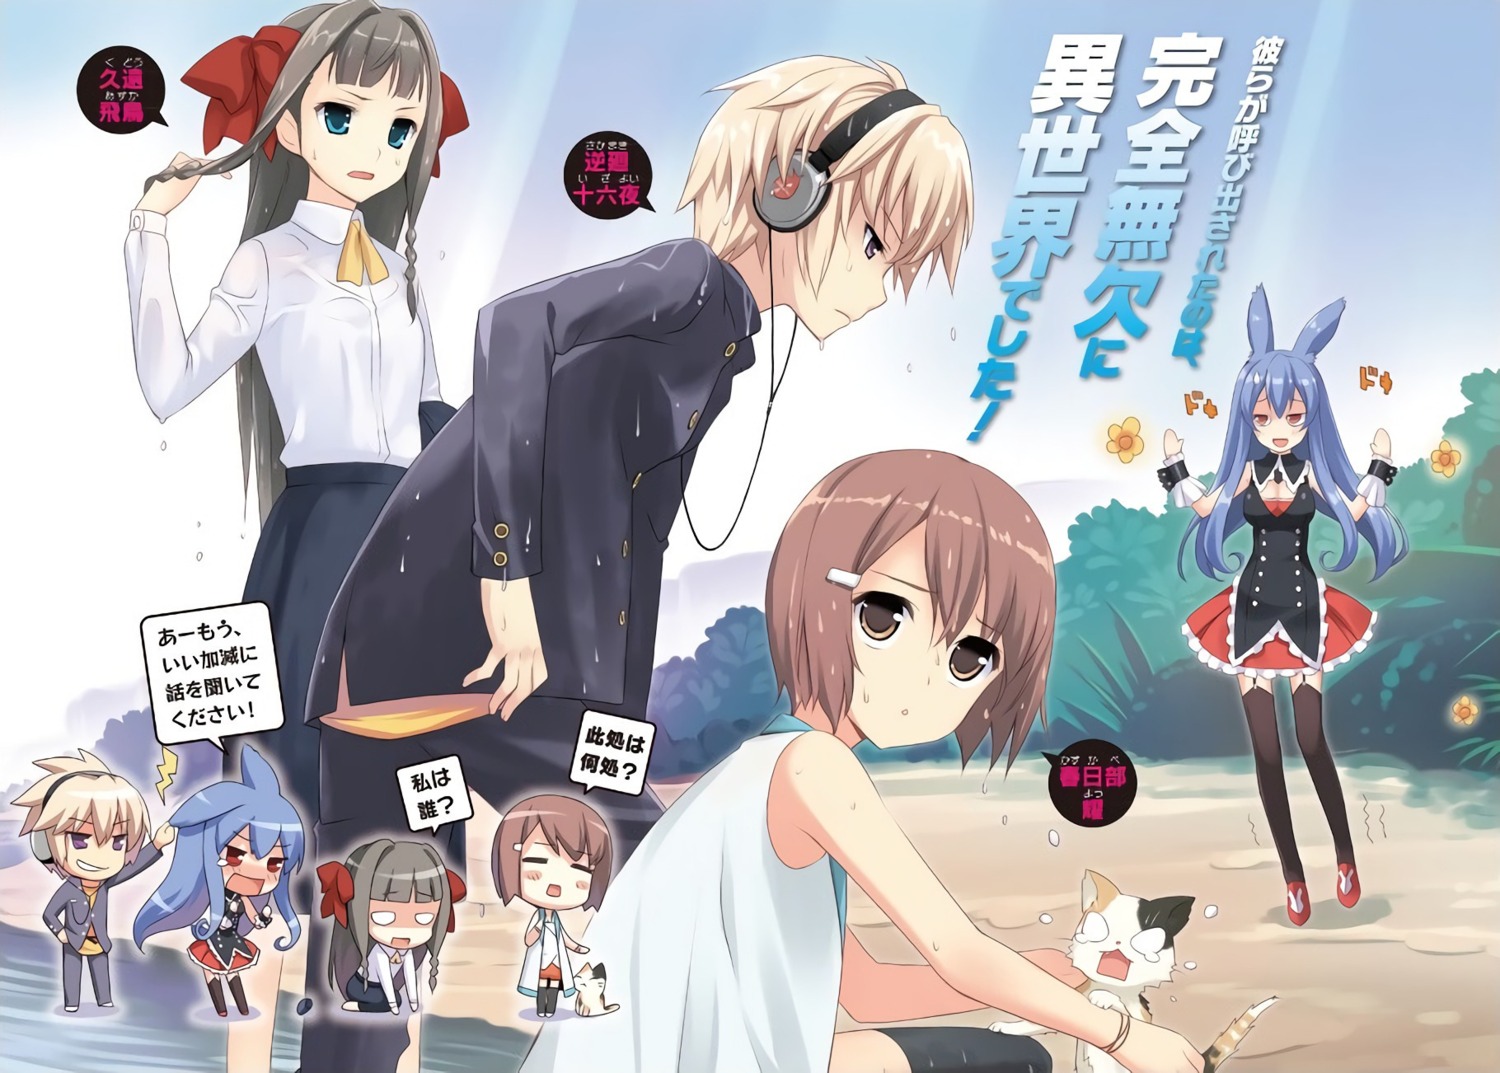 KuroUsagi - Mondaiji-tachi Anime Wallpapers and Images - Desktop